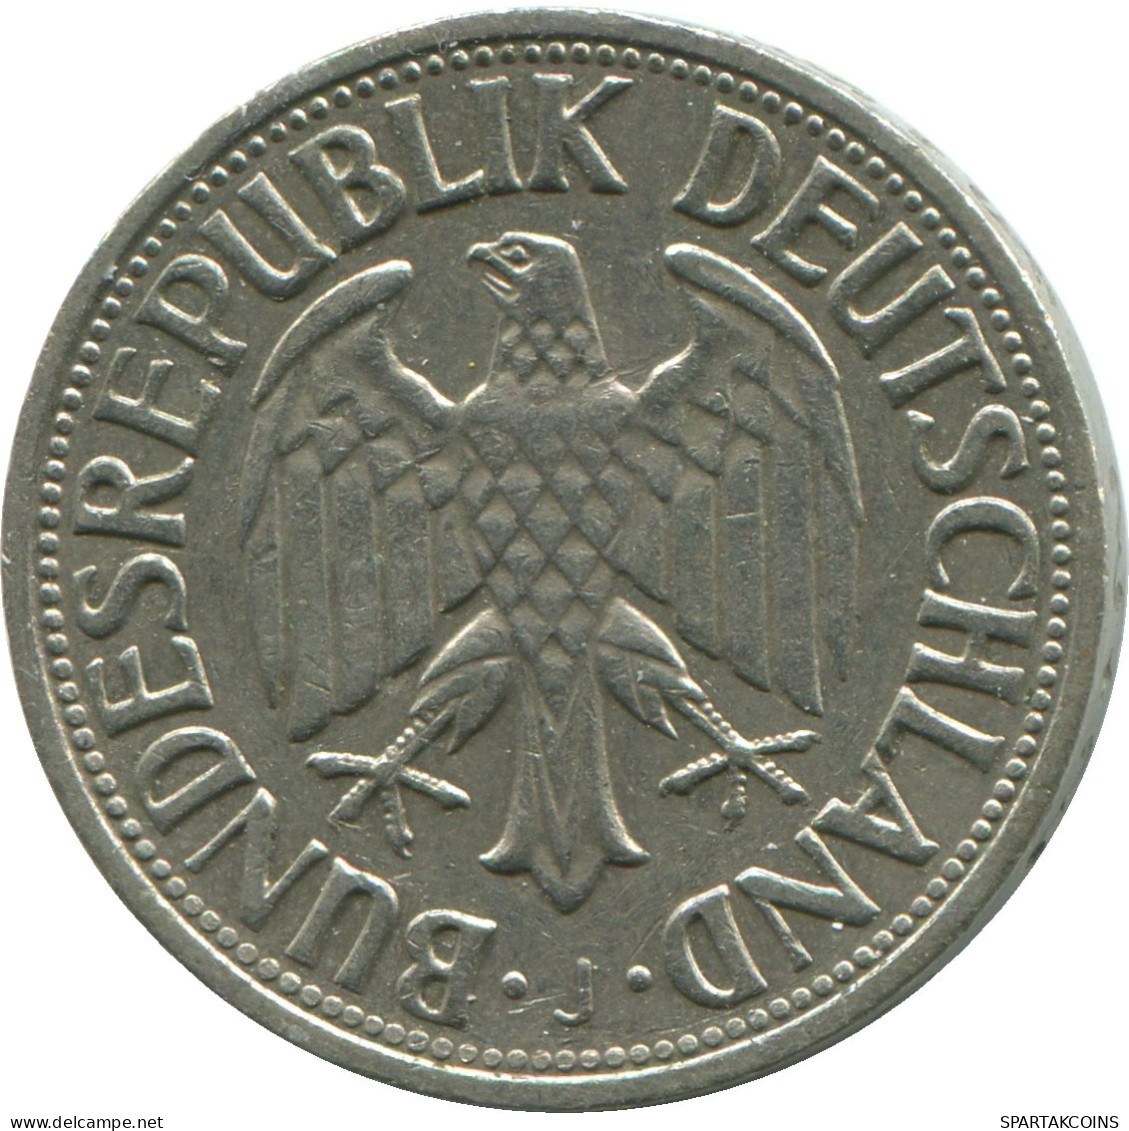 1 MARK 1966 J BRD ALEMANIA Moneda GERMANY #DE10406.5.E.A - 1 Mark